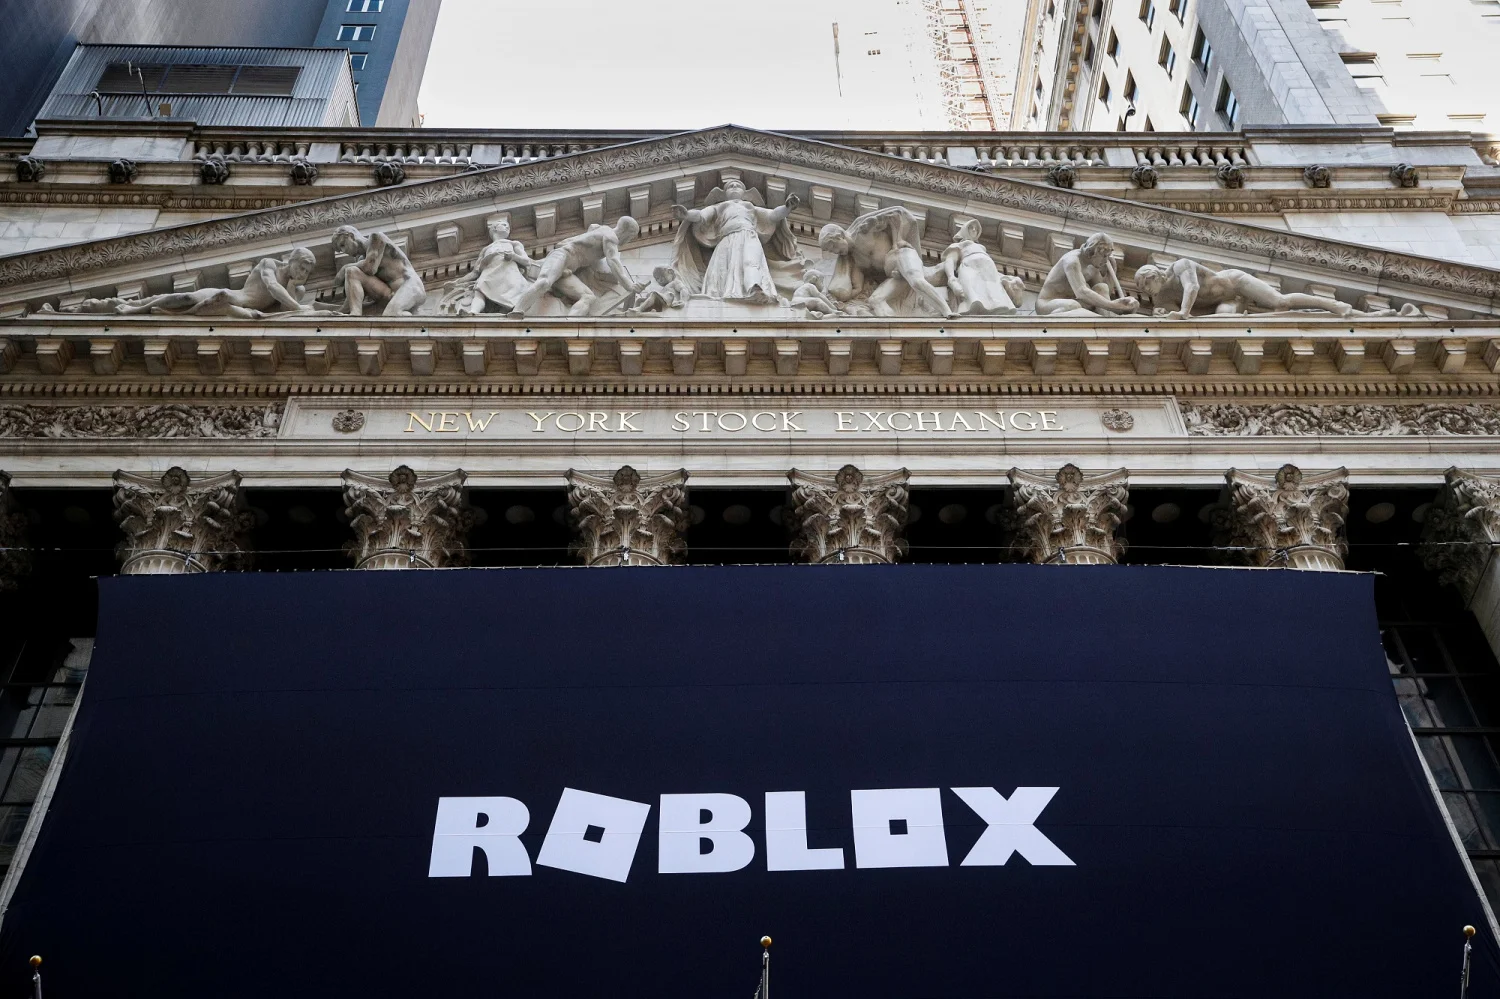 Roblox, plataforma de games, prepara IPO de US$ 4 bilhões – Negócios –  Estadão E-Investidor – As principais notícias do mercado financeiro